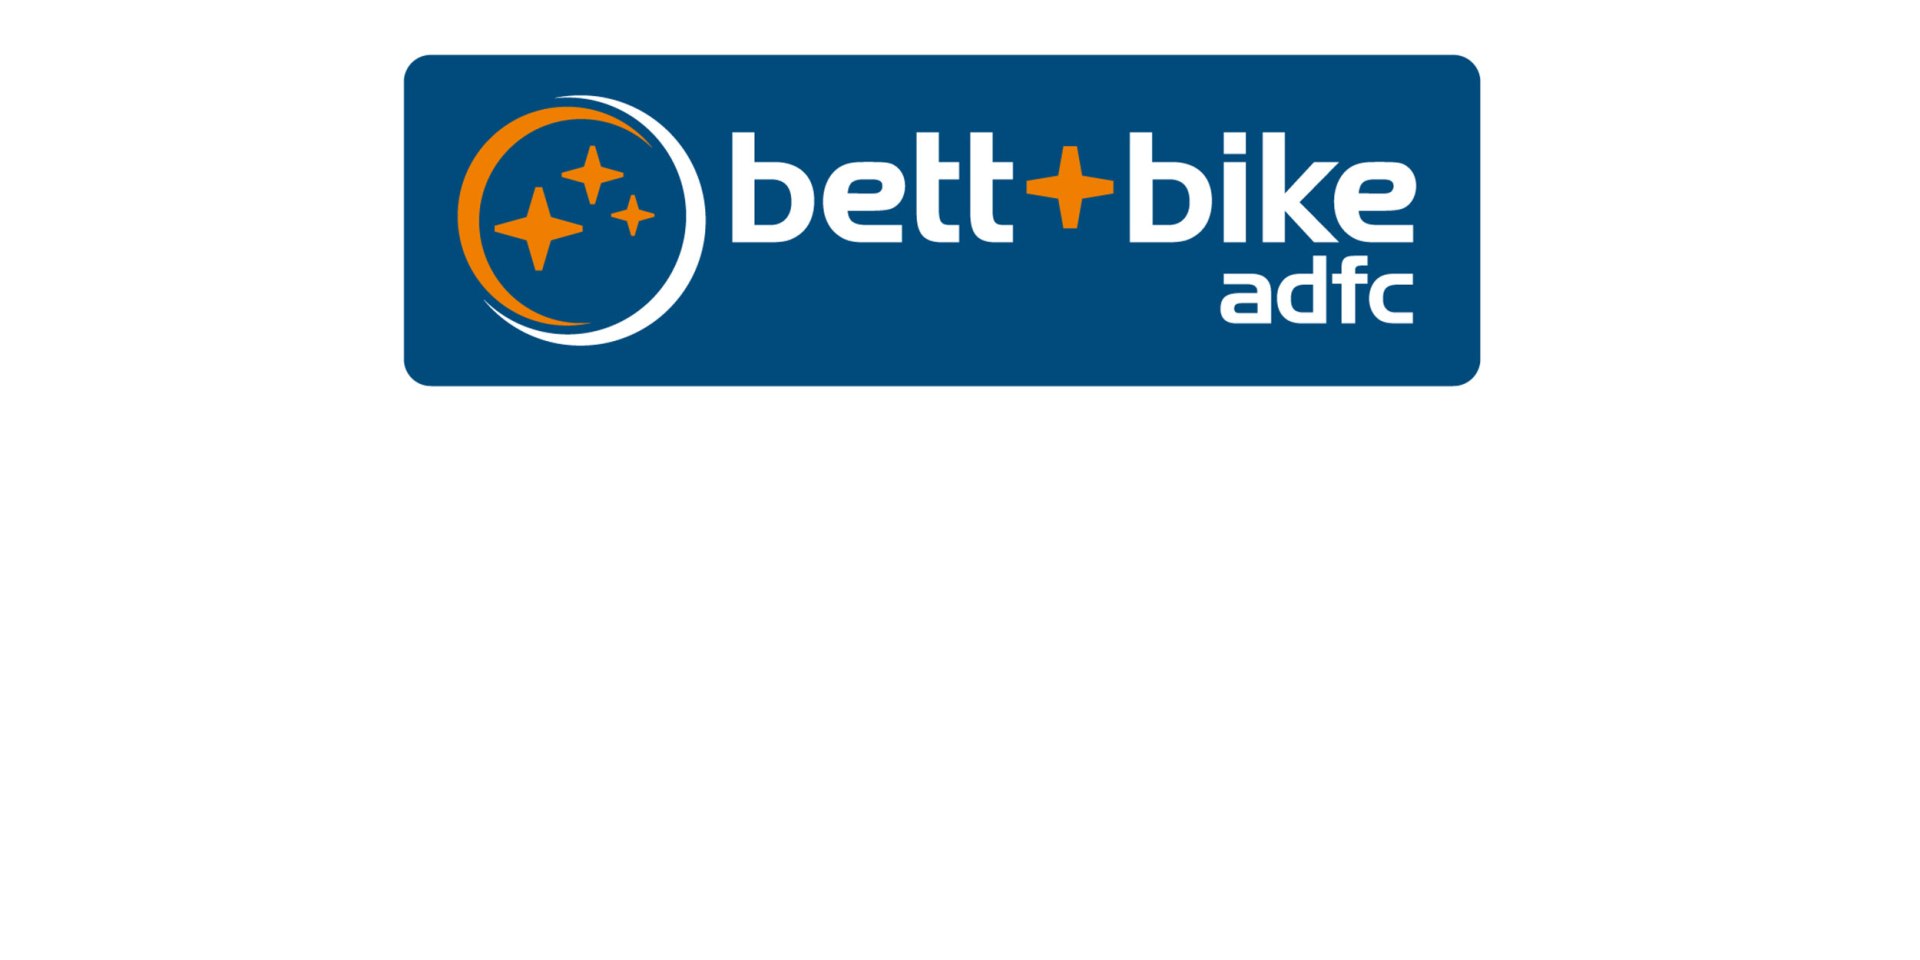 logo_bett-und-bike_3